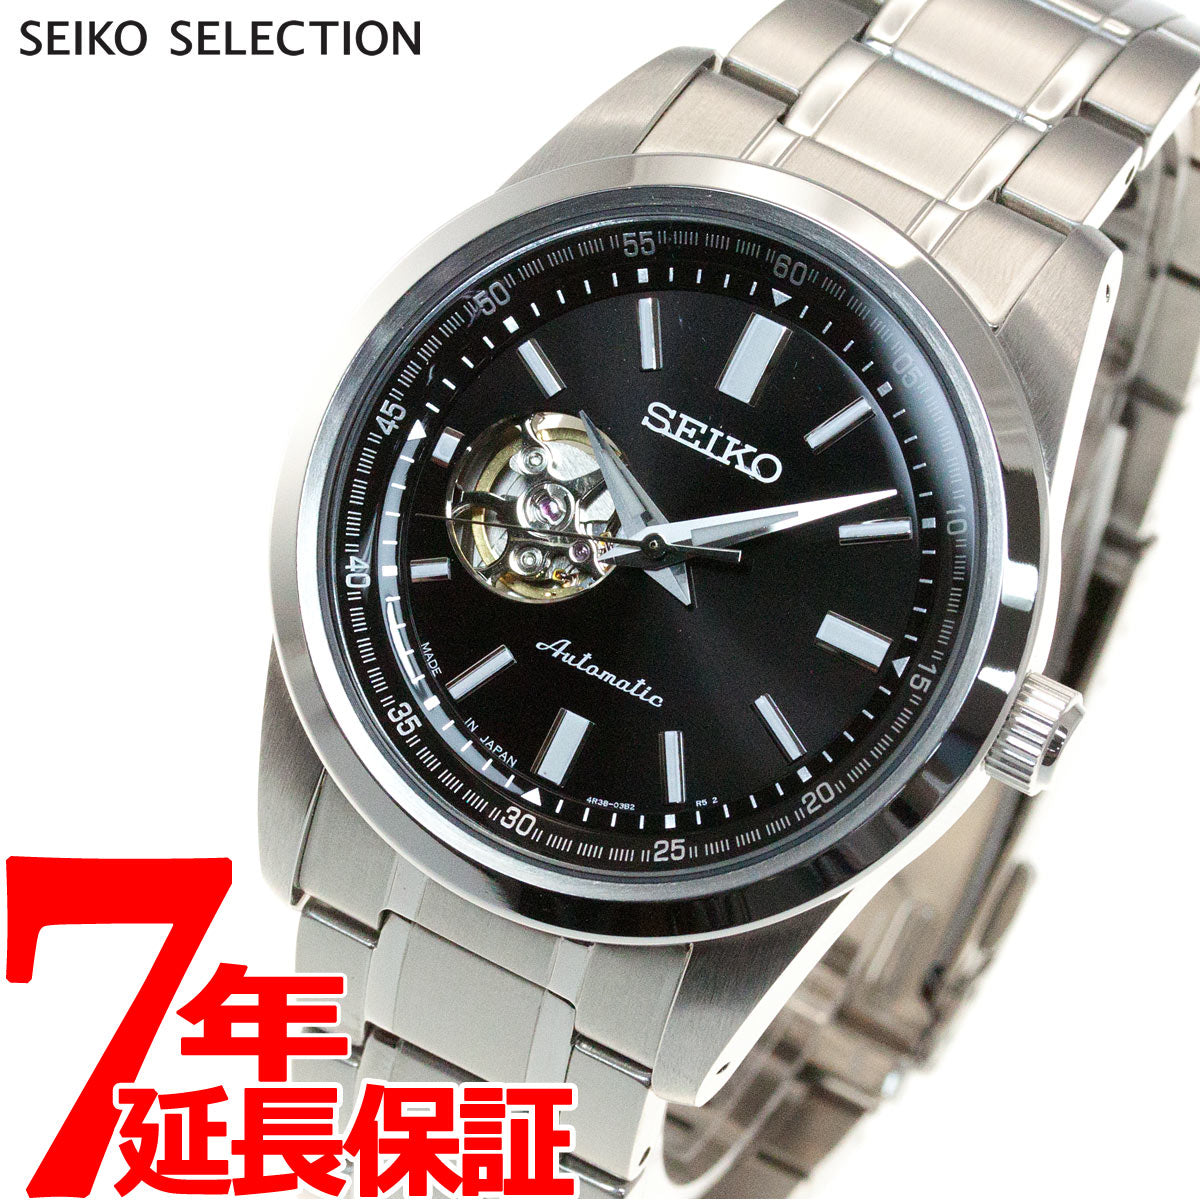 ナチュラルネイビー セイコー セレクション SEIKO SELECTION メカニカル 自動巻き 腕時計 メンズ セミスケルトン SCVE053 |  